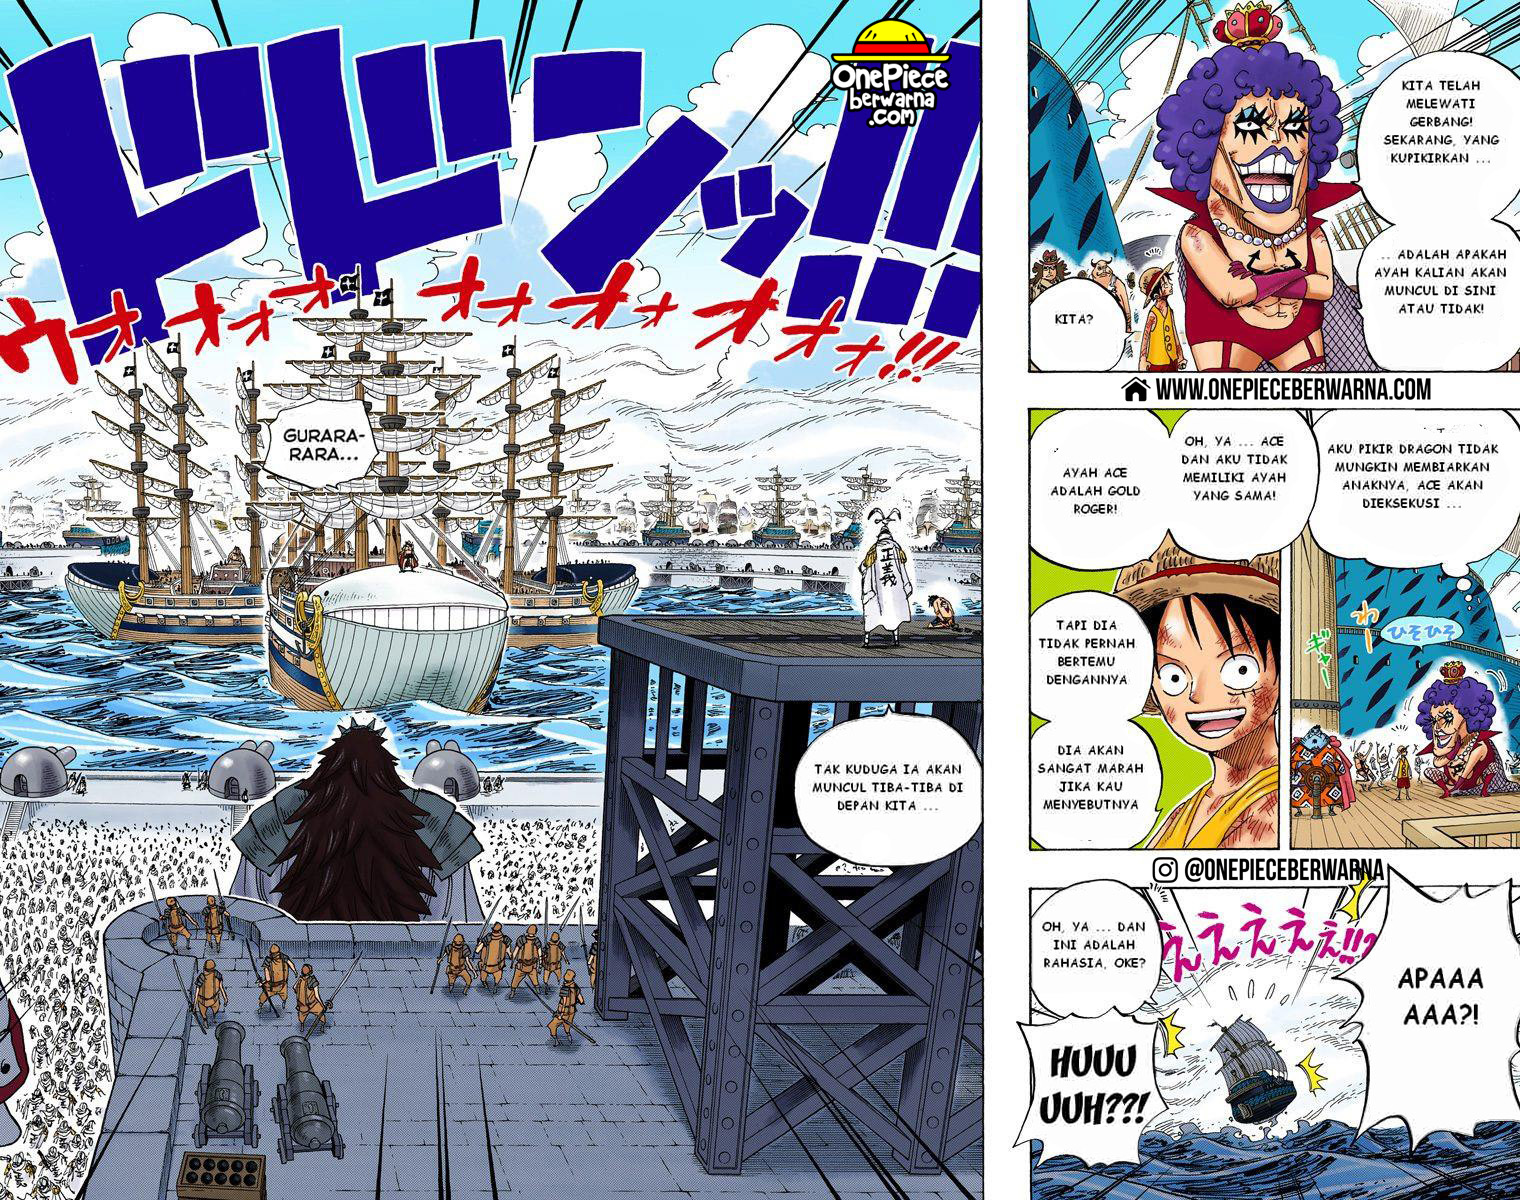 One Piece Berwarna Chapter 552